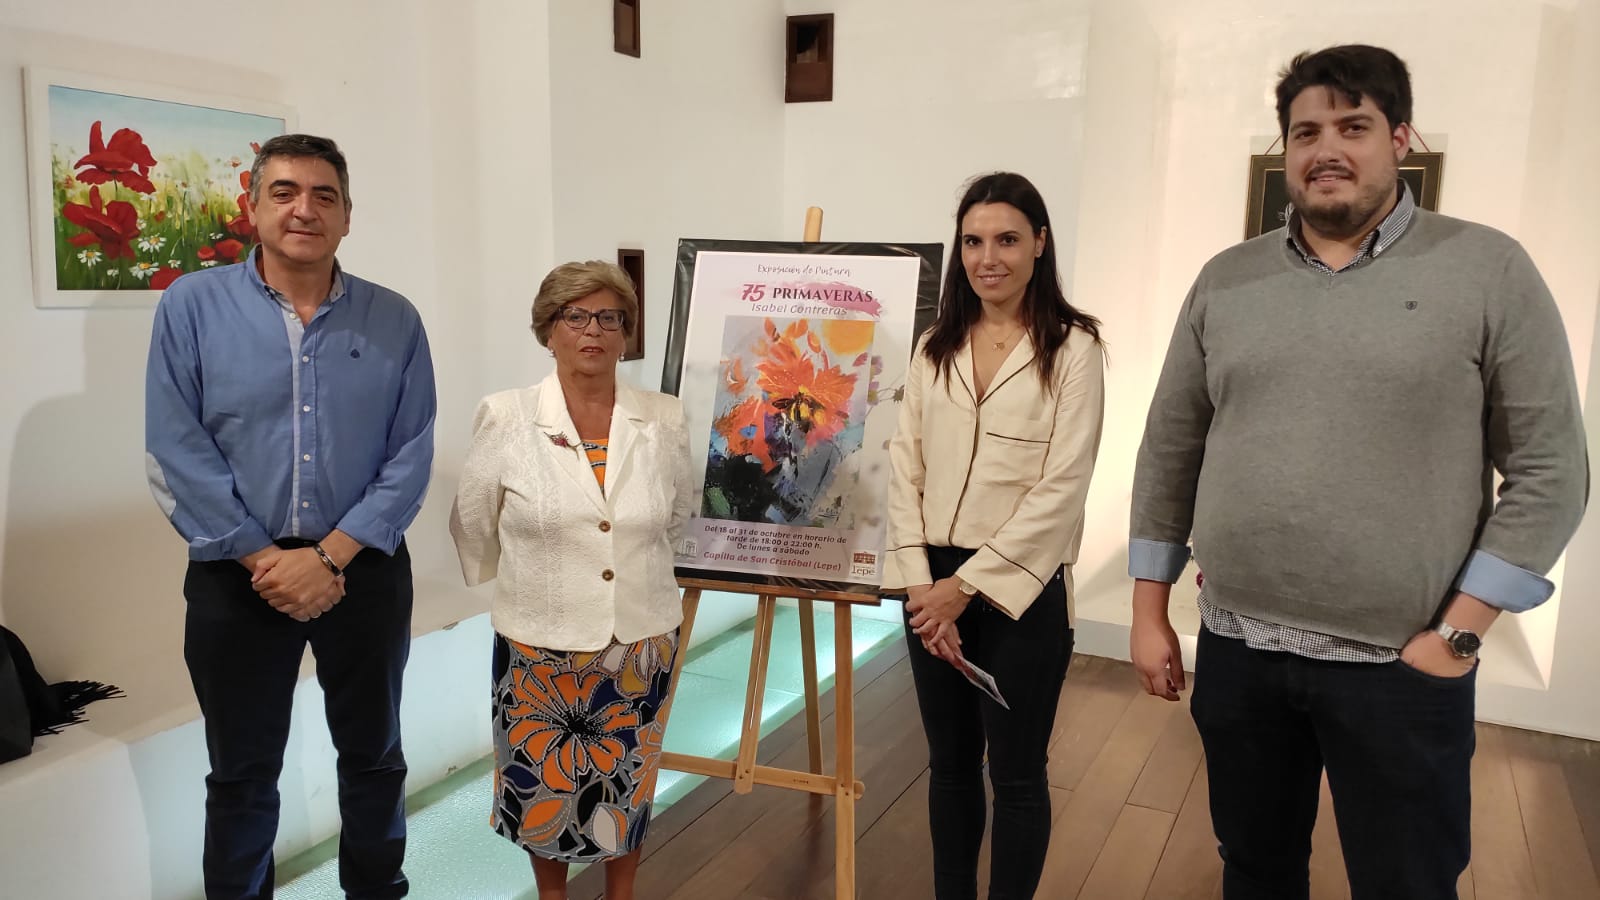 La Capilla de San Cristóbal acoge la exposición ‘75 primaveras’ de Isabel Contreras